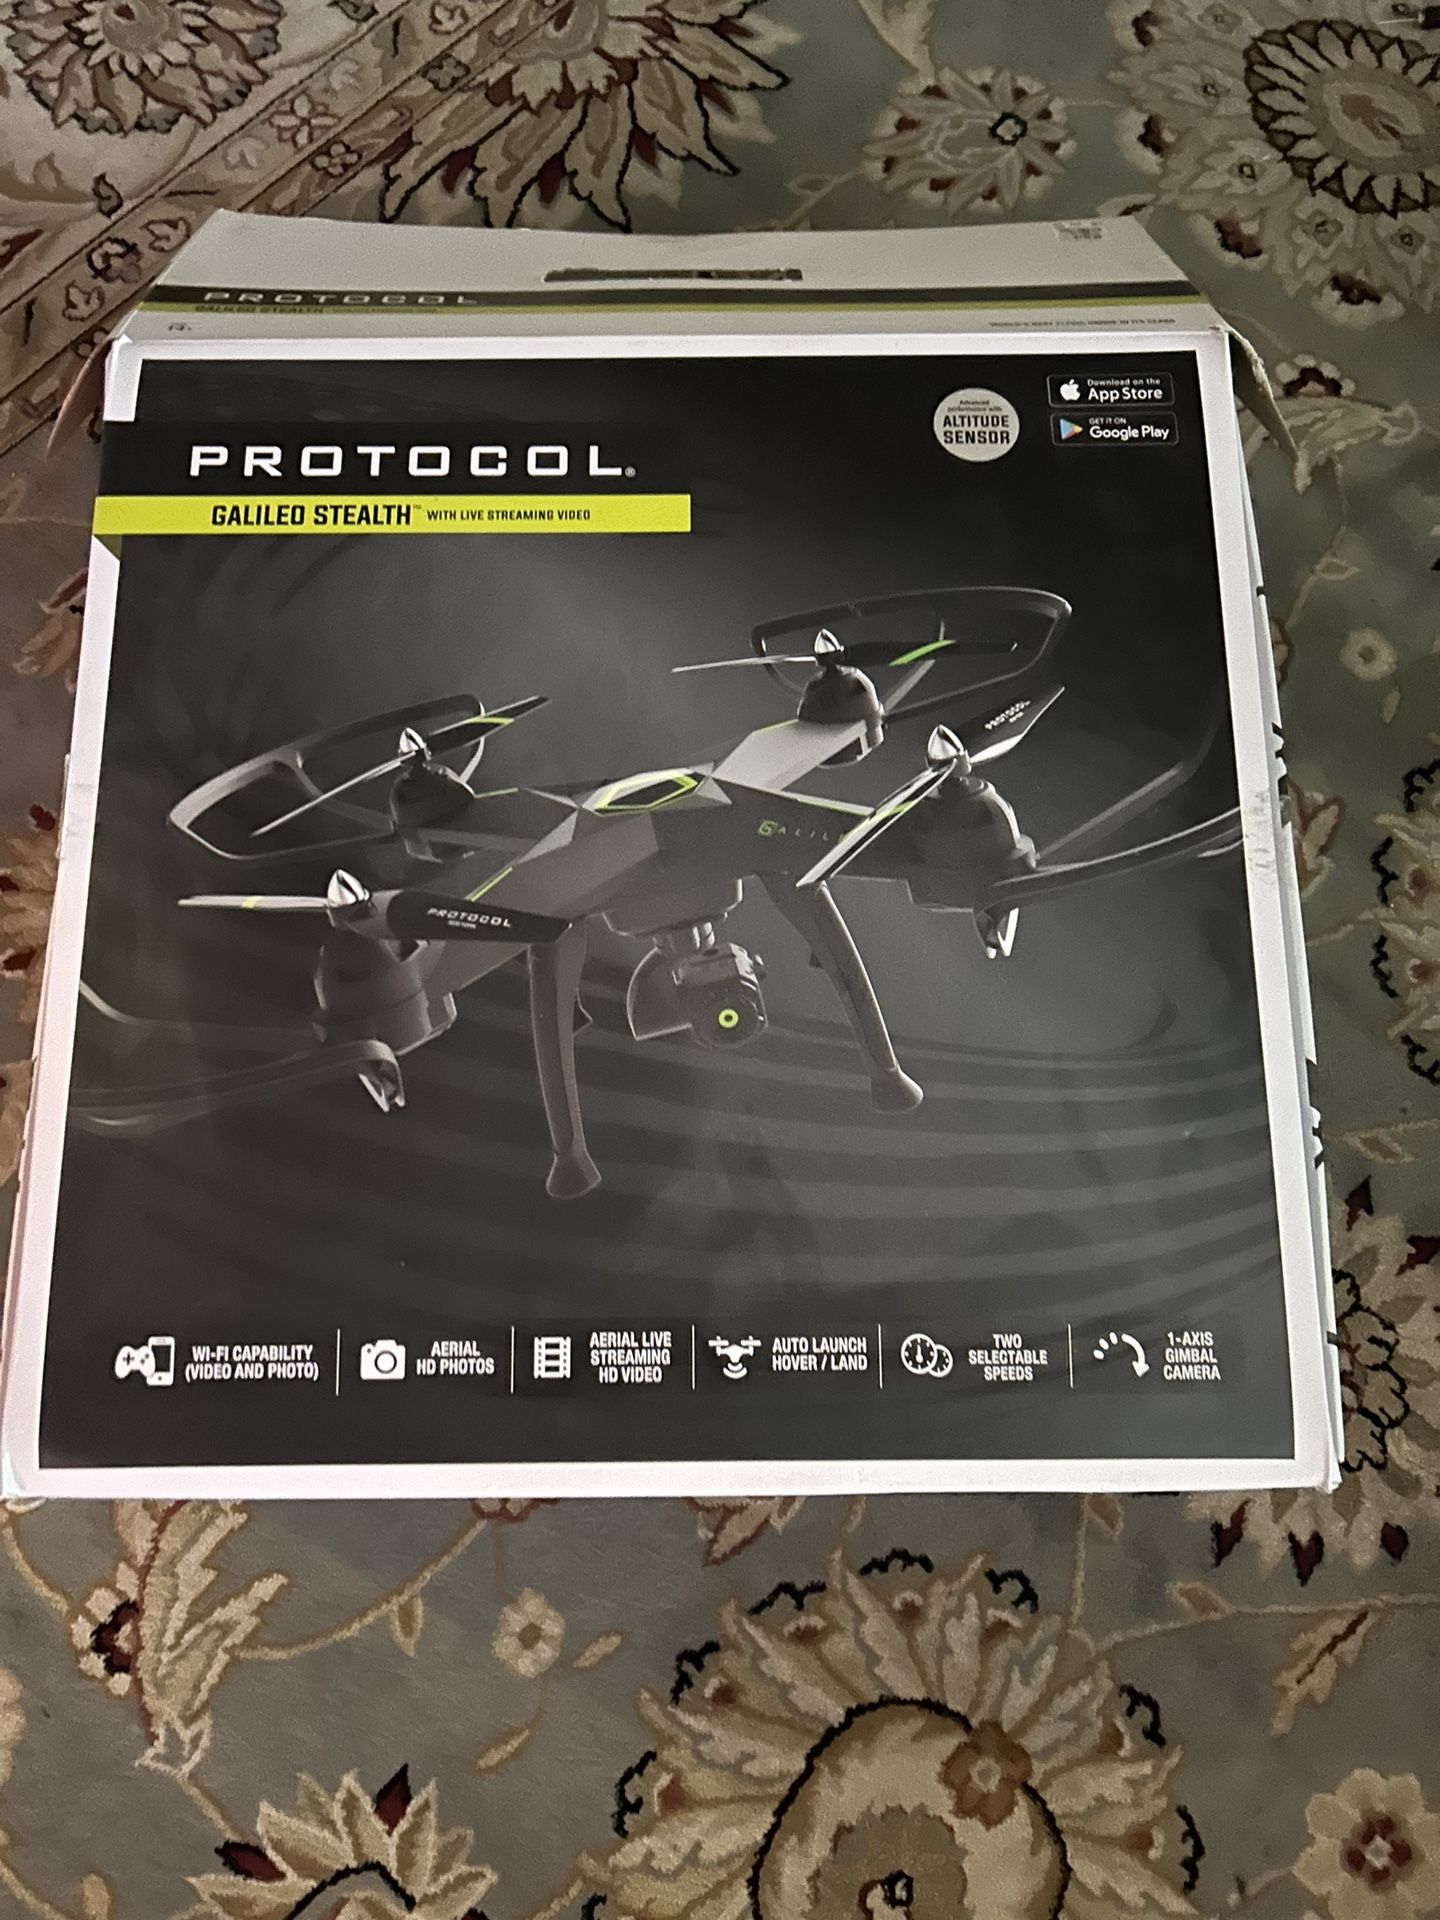 Protocol Drone